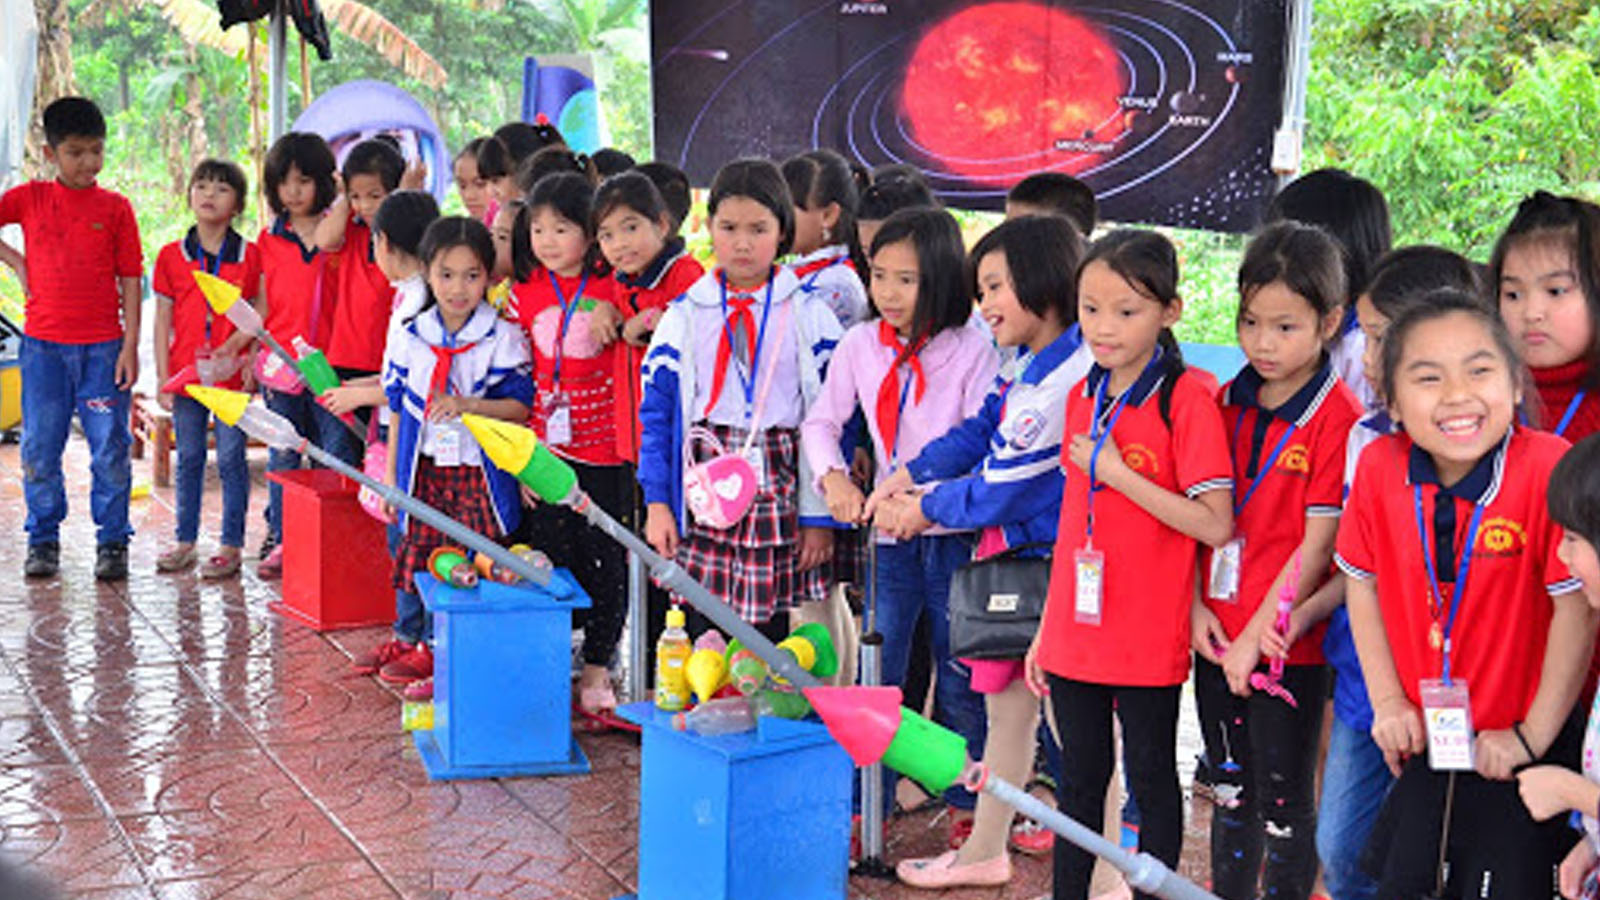 Tổng hợp những nông trại giáo dục nổi tiếng cho trẻ gần Hà Nội